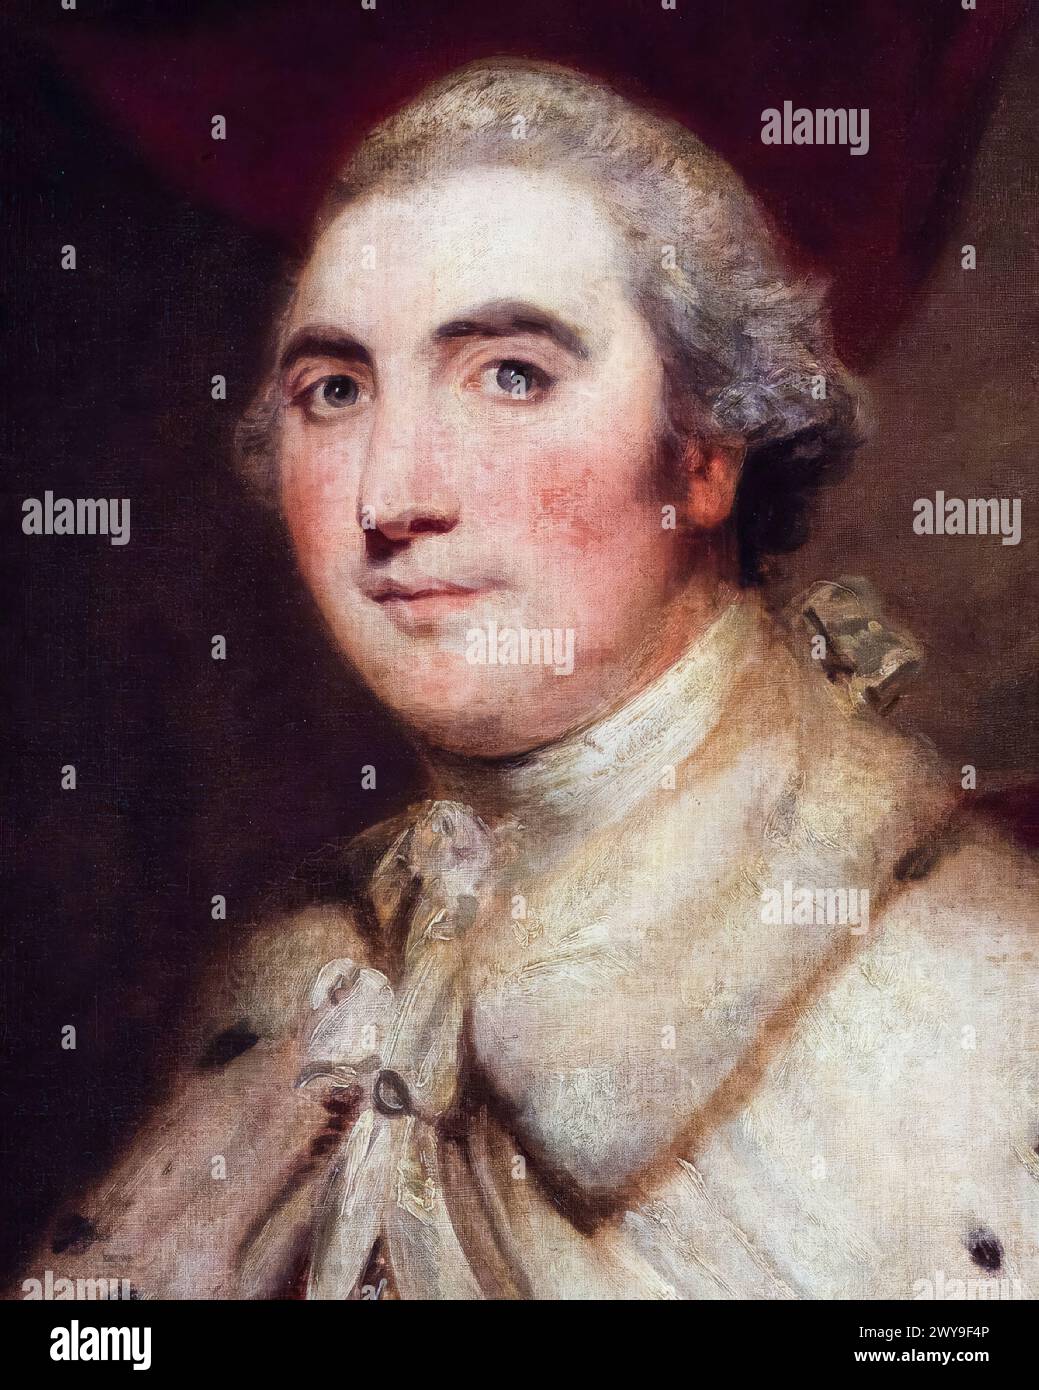 William Petty, II conte di Shelburne (1737-1805), politico Whig anglo-irlandese e primo ministro della Gran Bretagna 1782-1783, ritratto dipinto ad olio su tela dopo Sir Joshua Reynolds, 1766-1799 Foto Stock